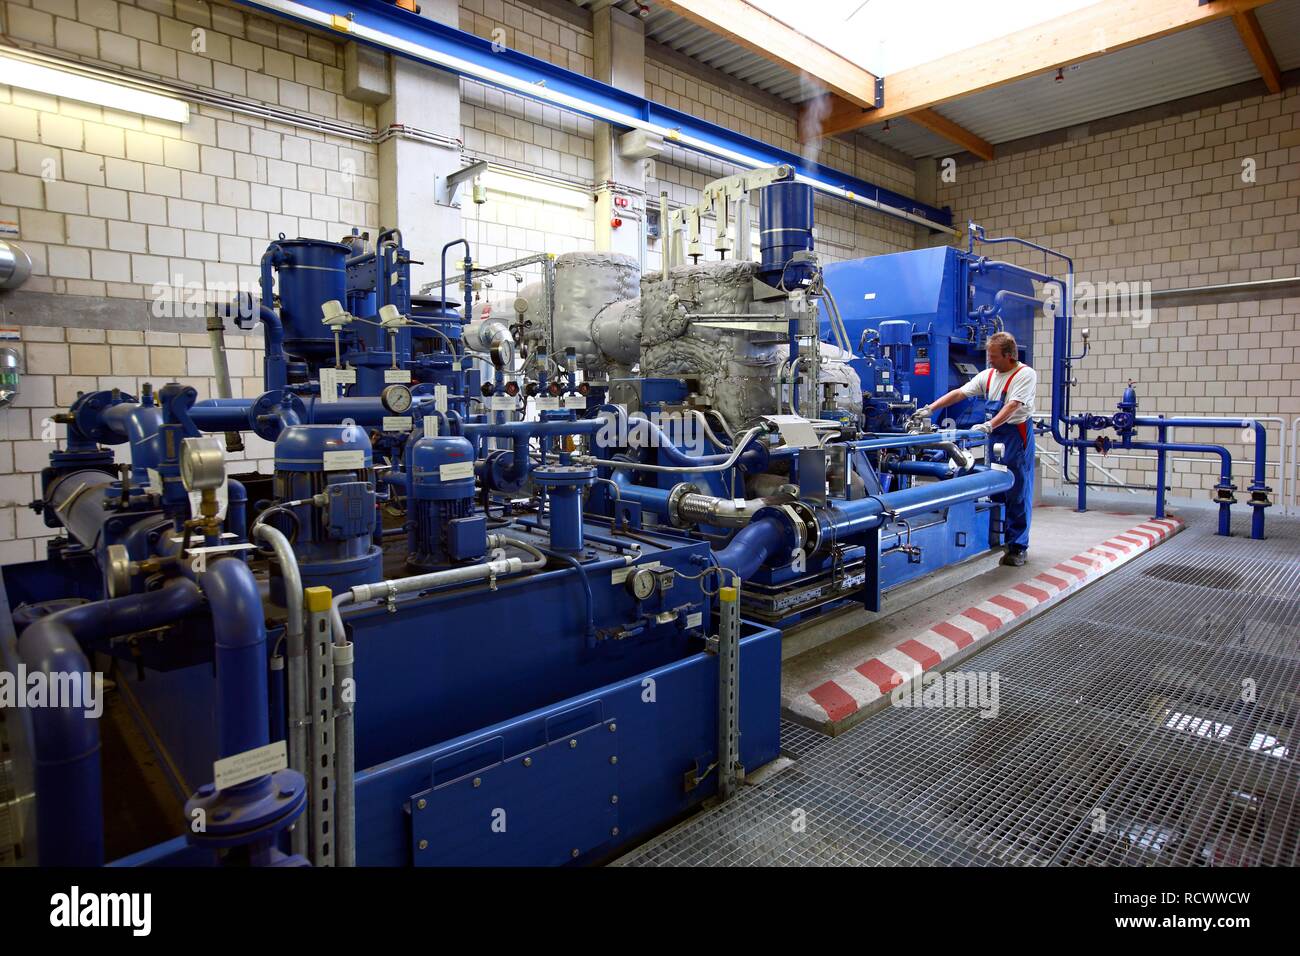 Maison de turbine, générateur d'une centrale de cogénération biomasse, production combinée de chaleur et d'électricité, exploité par Biokraftgesellschaft Moers Banque D'Images